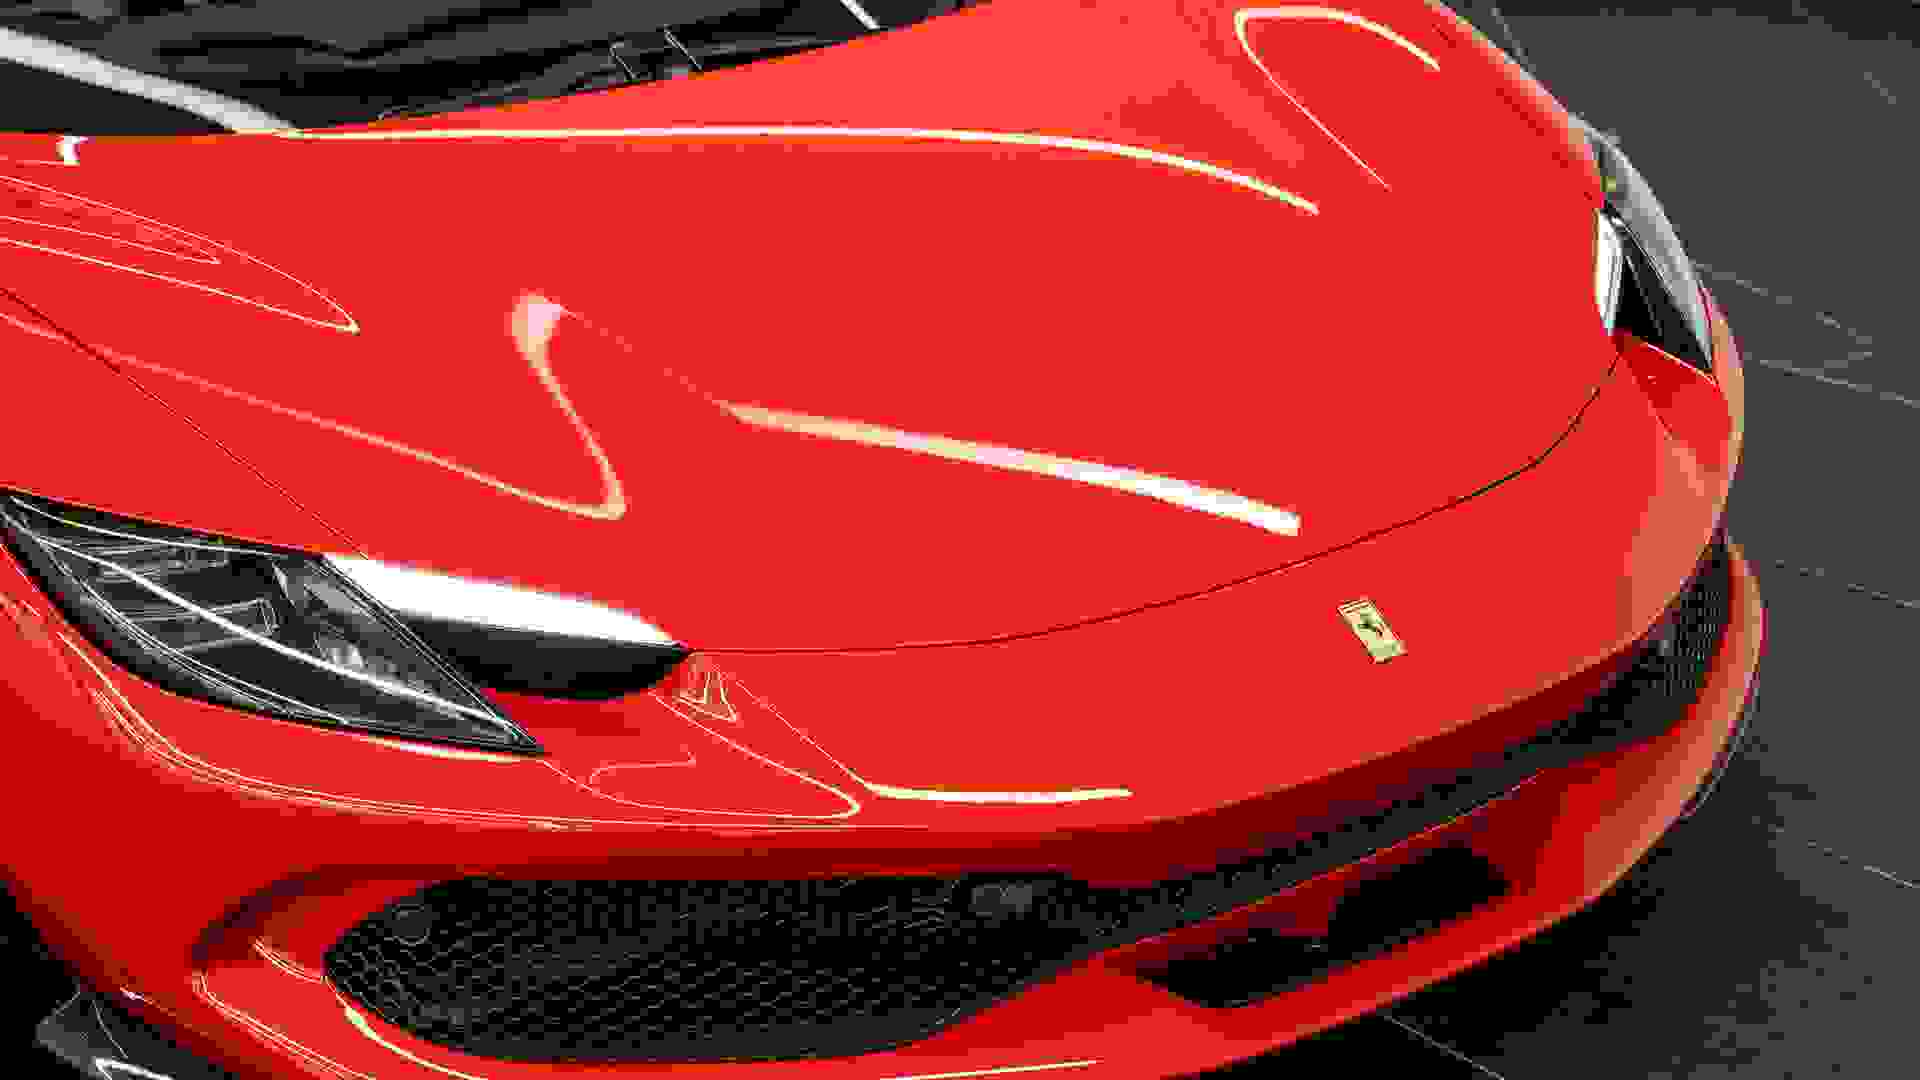 Ferrari 296 Photo 0fa76397-34b5-48c4-ada7-7e58c518962b.jpg